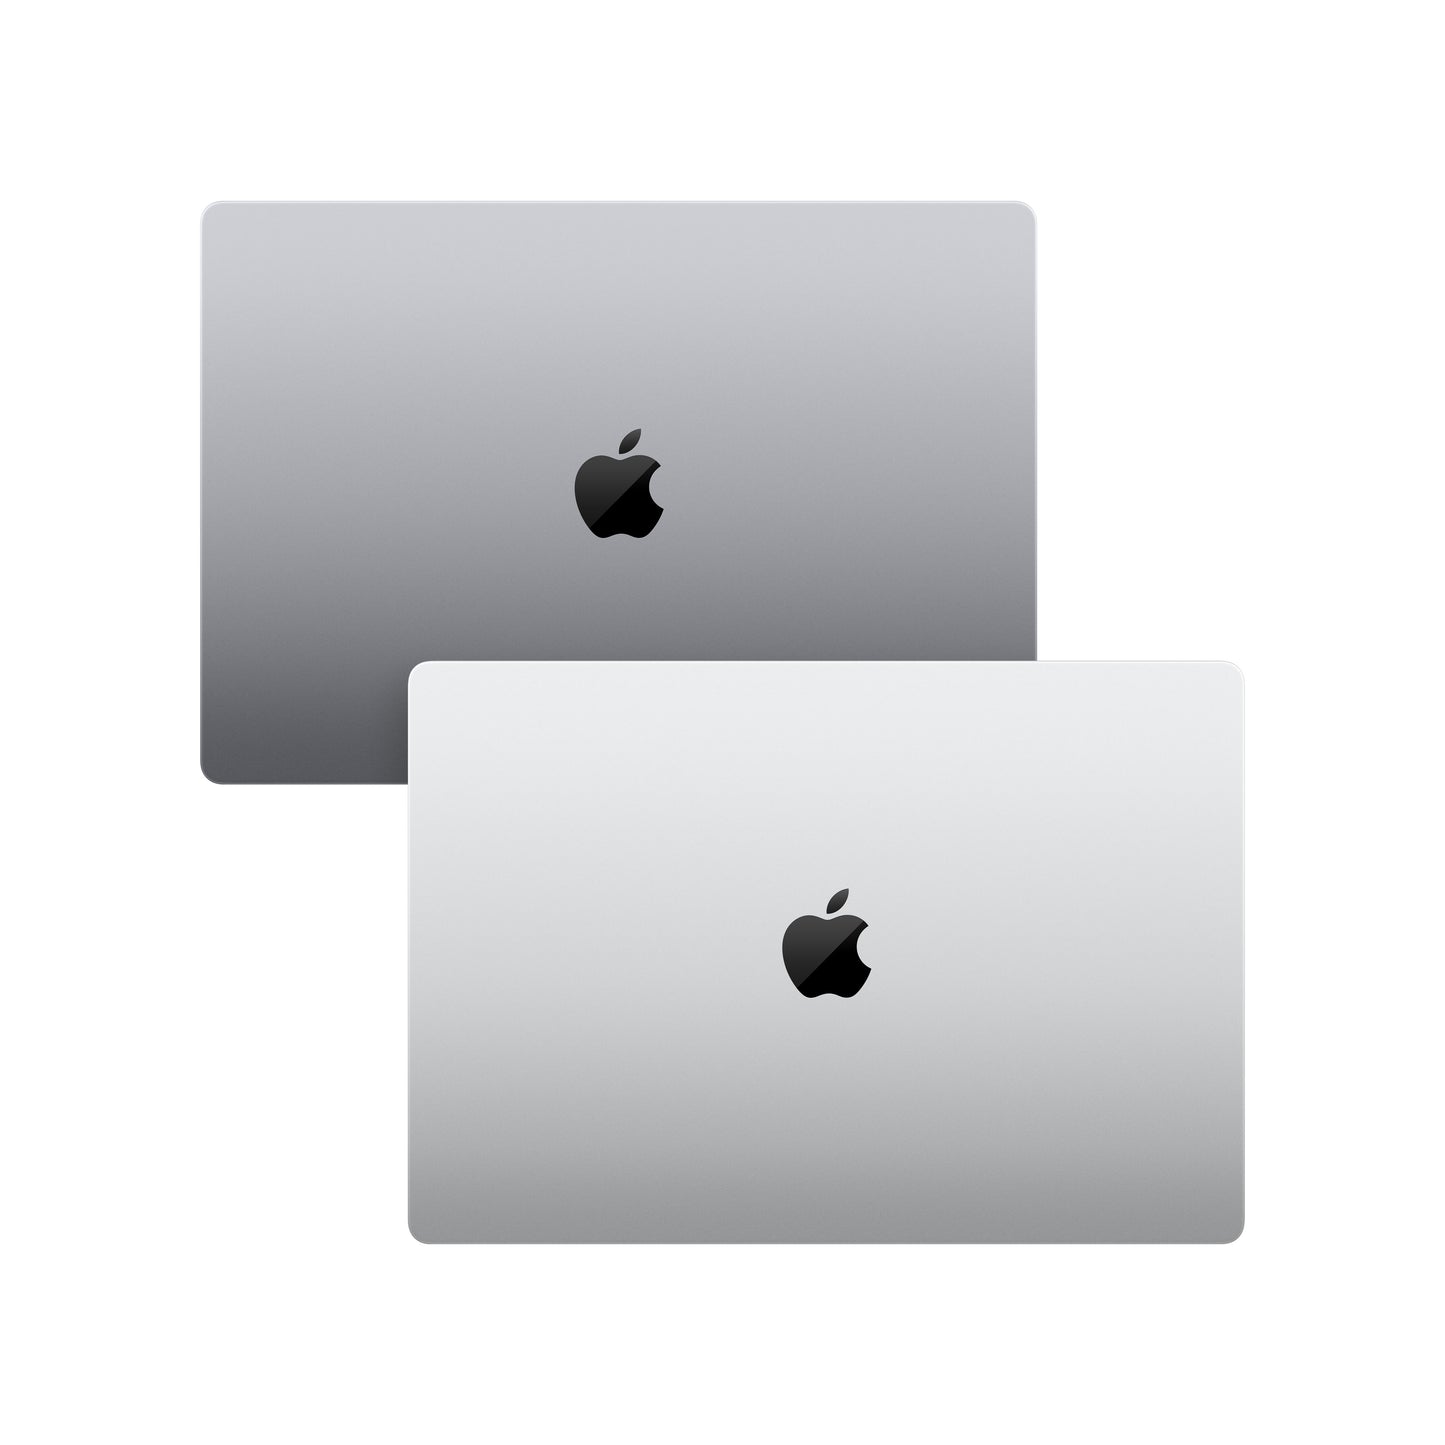 MacBook Pro de 16 pulgadas Chip M1 Pro de Apple con CPU de diez núcleos y GPU de dieciséis núcleos